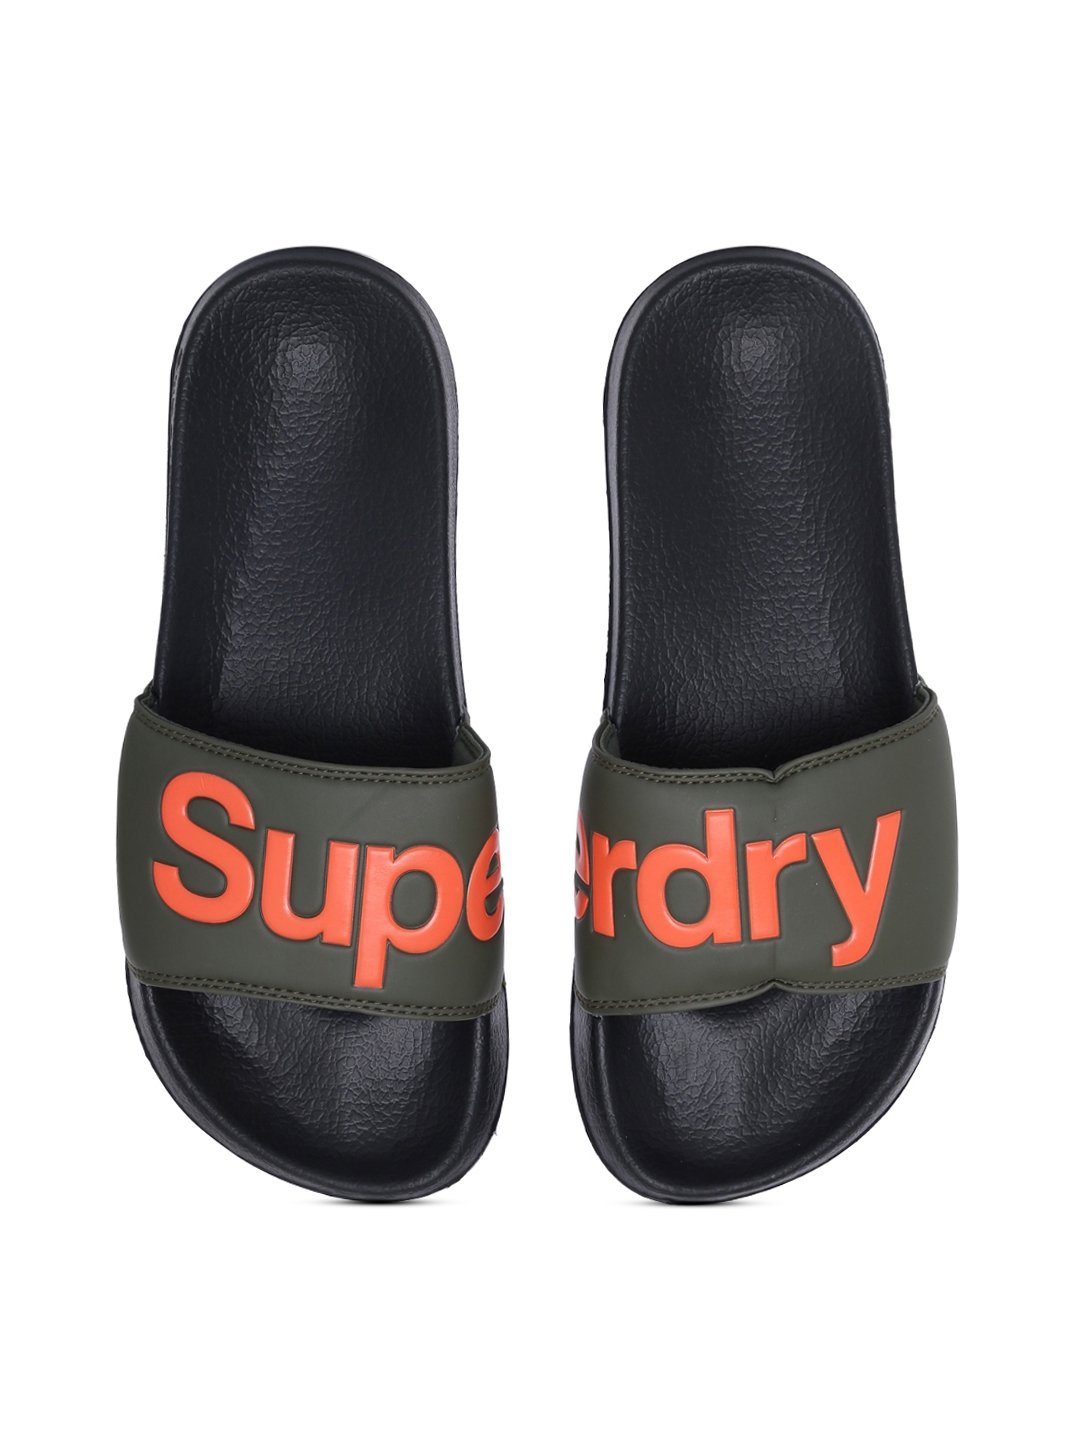 Superdry Men Black & Olive Green Printed Sliders - Flip Flops for Men | Myntra